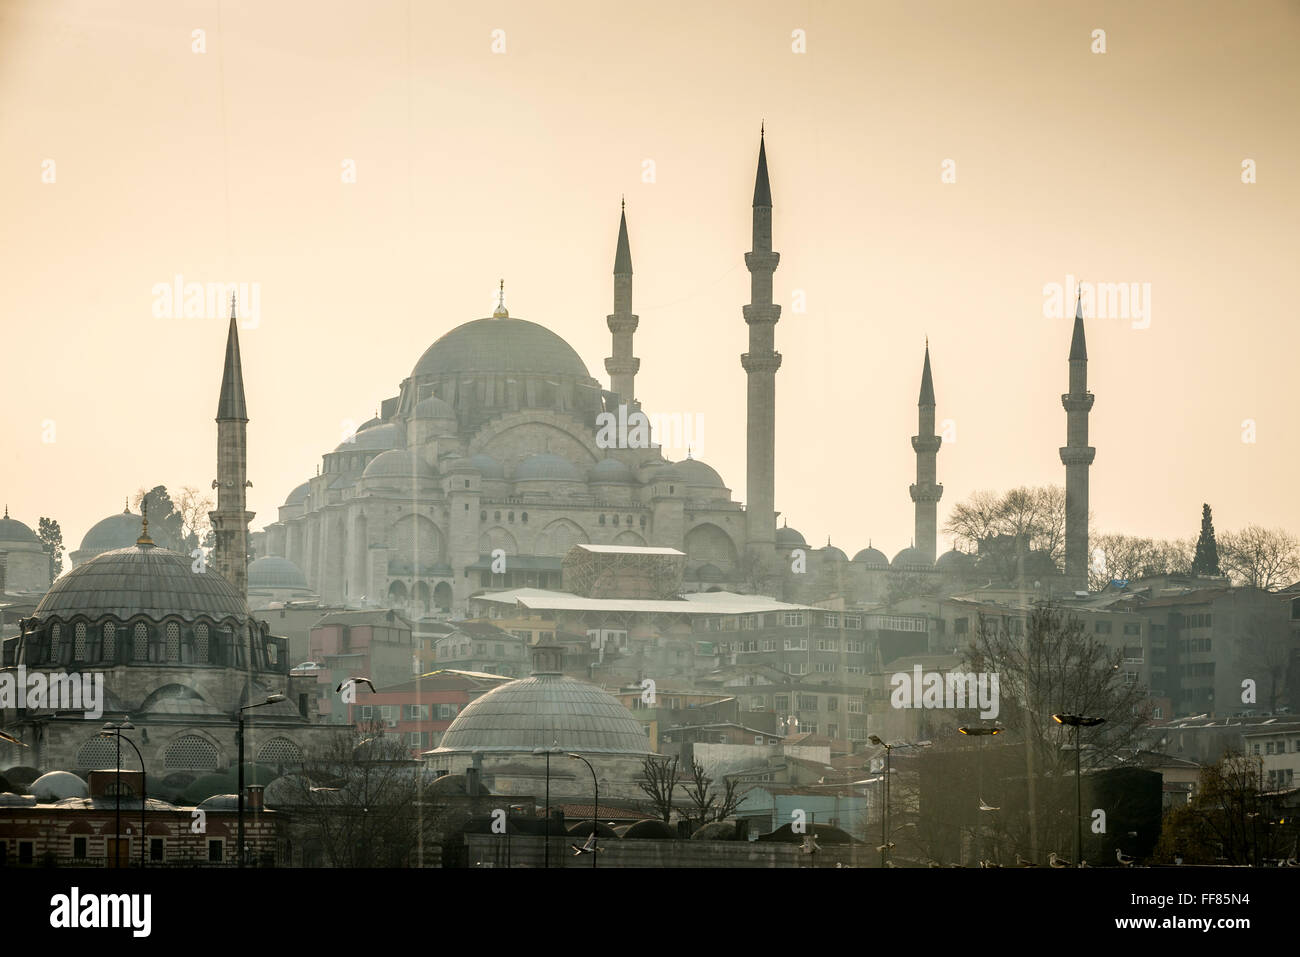 Die Sultan Ahmed Mosque, auch bekannt als die blaue Moschee in Istanbul, Türkei. Stockfoto